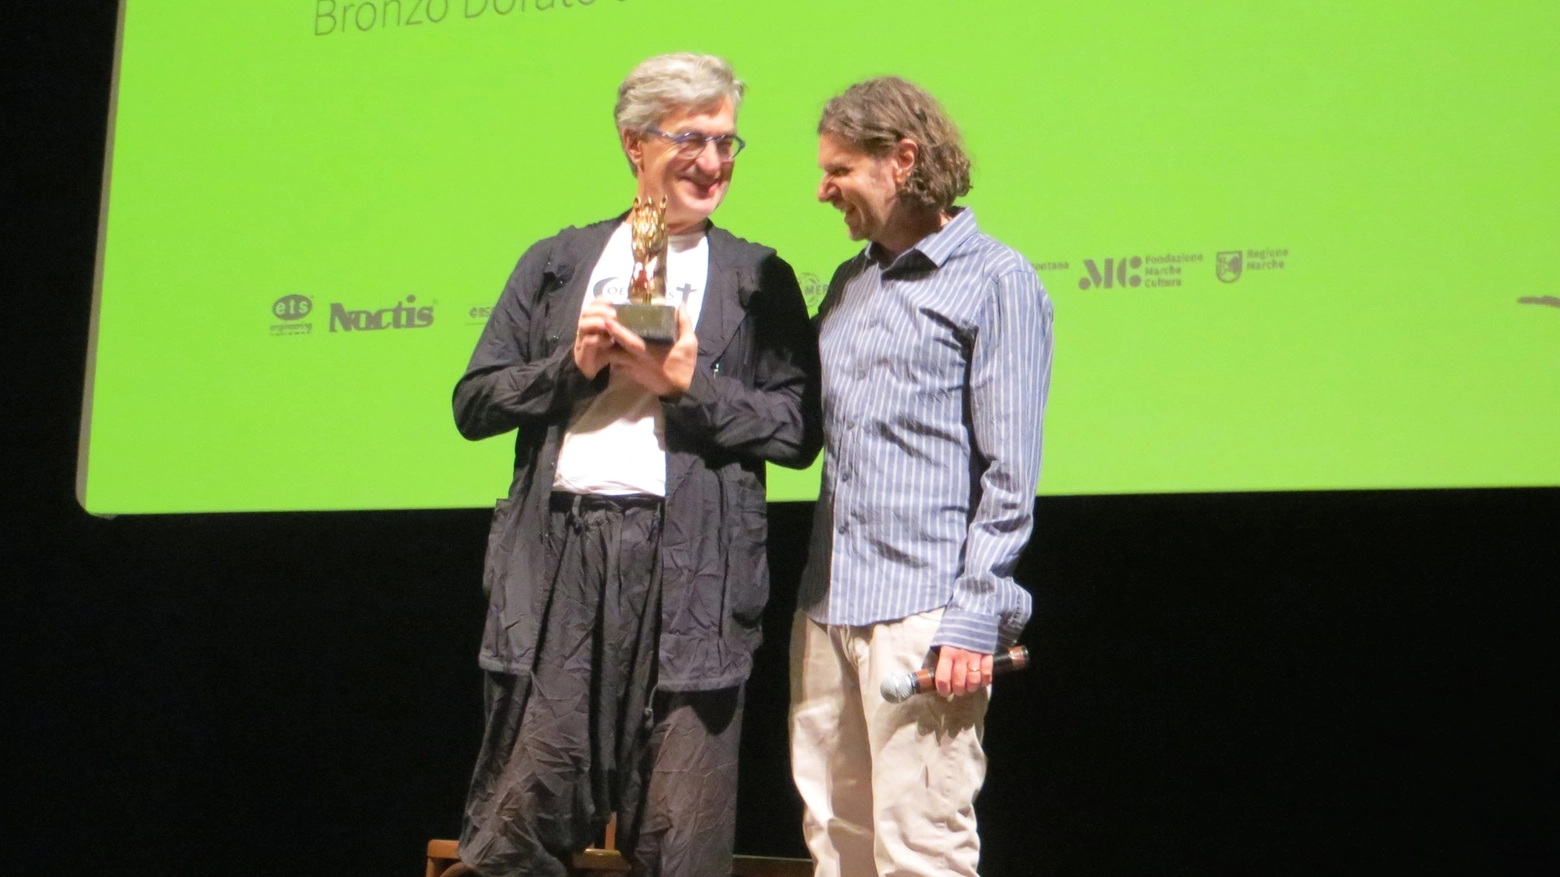 Consegnato il premio Bronzo Dorato alla carriera al regista tedesco